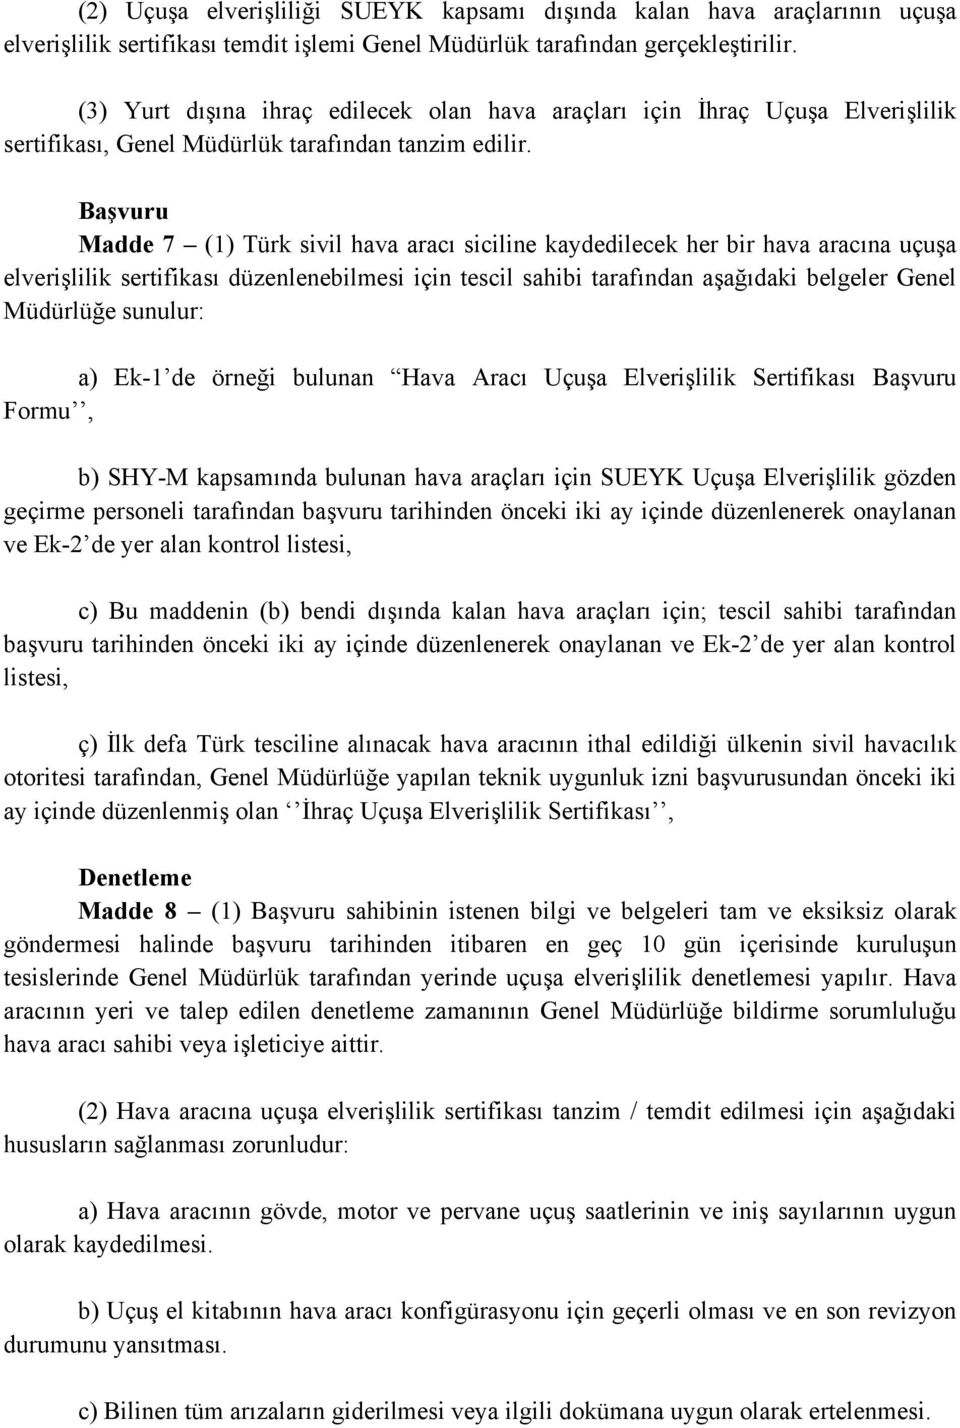 Başvuru Madde 7 (1) Türk sivil hava aracı siciline kaydedilecek her bir hava aracına uçuşa elverişlilik sertifikası düzenlenebilmesi için tescil sahibi tarafından aşağıdaki belgeler Genel Müdürlüğe